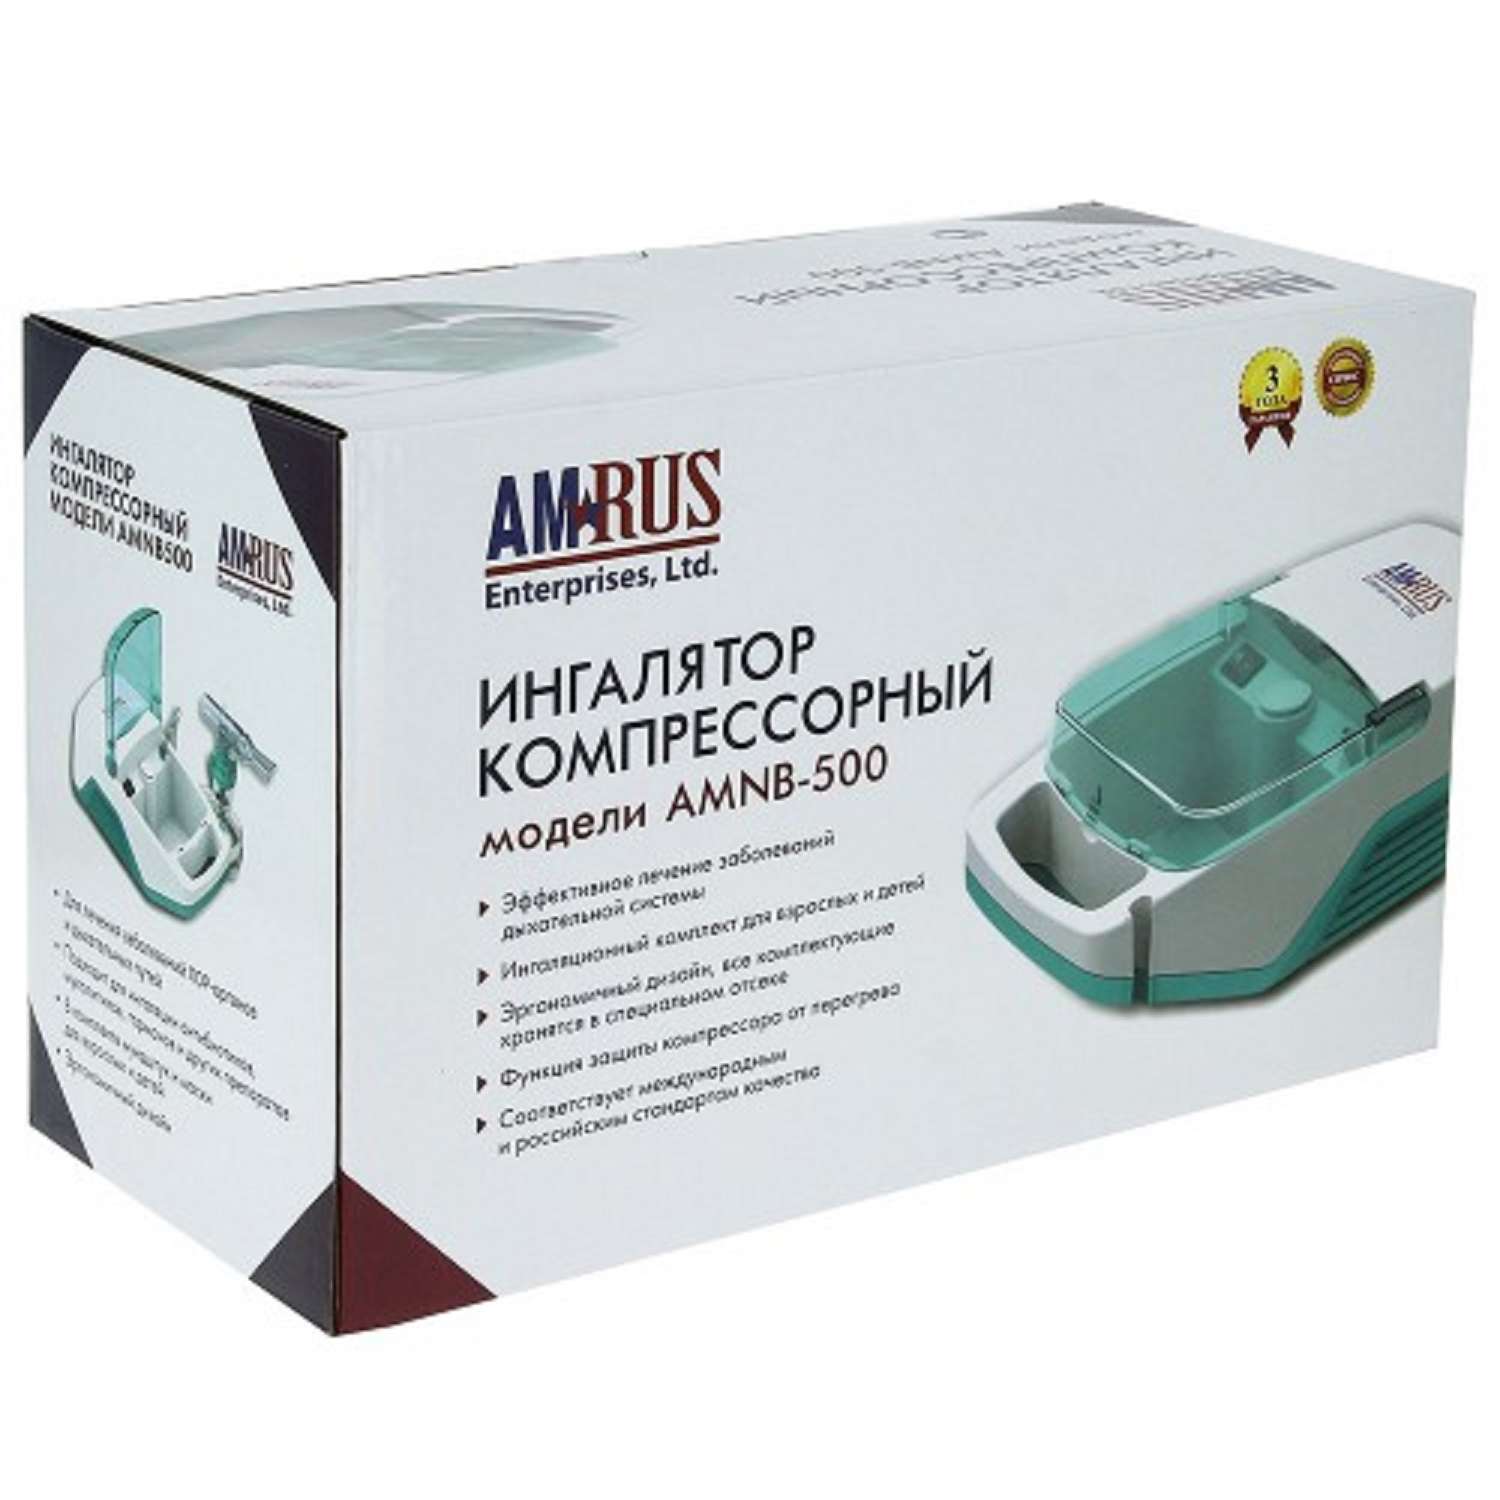 Ингалятор компрессорный АМРОС Базовый АМNB-500 - фото 2